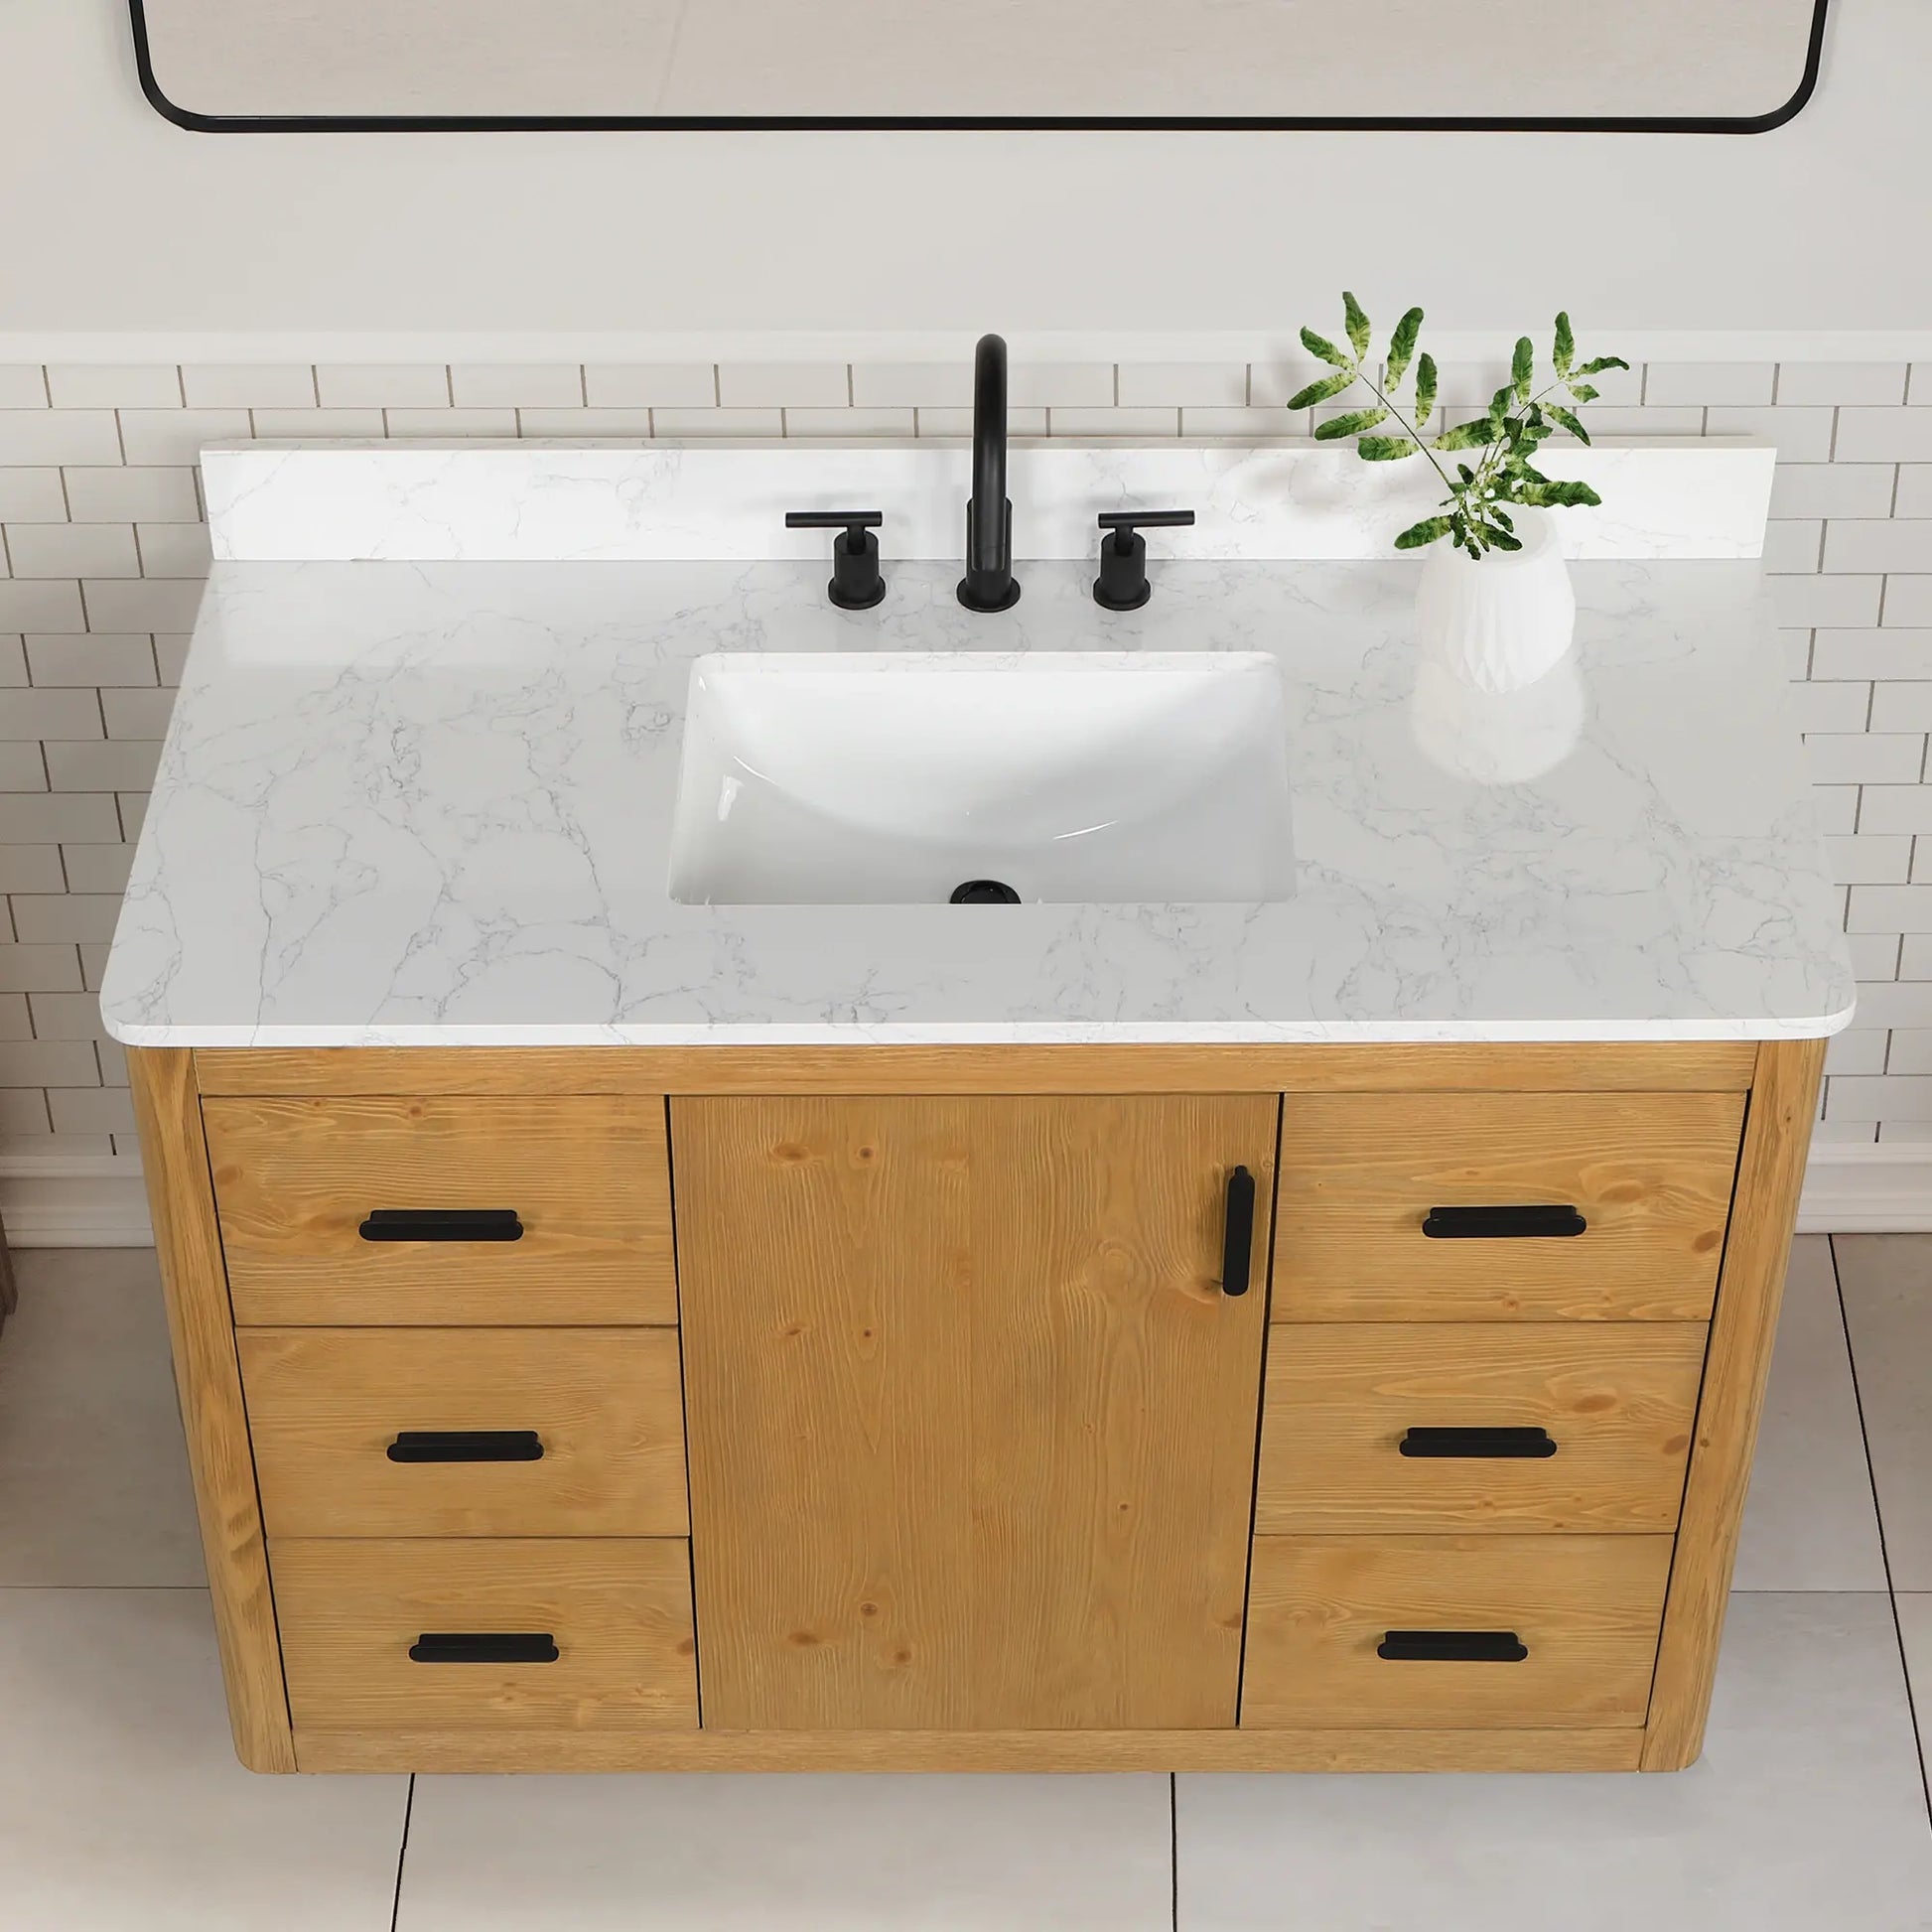 Altair Perla Single Bathroom Vanity in Natural Wood with Grain